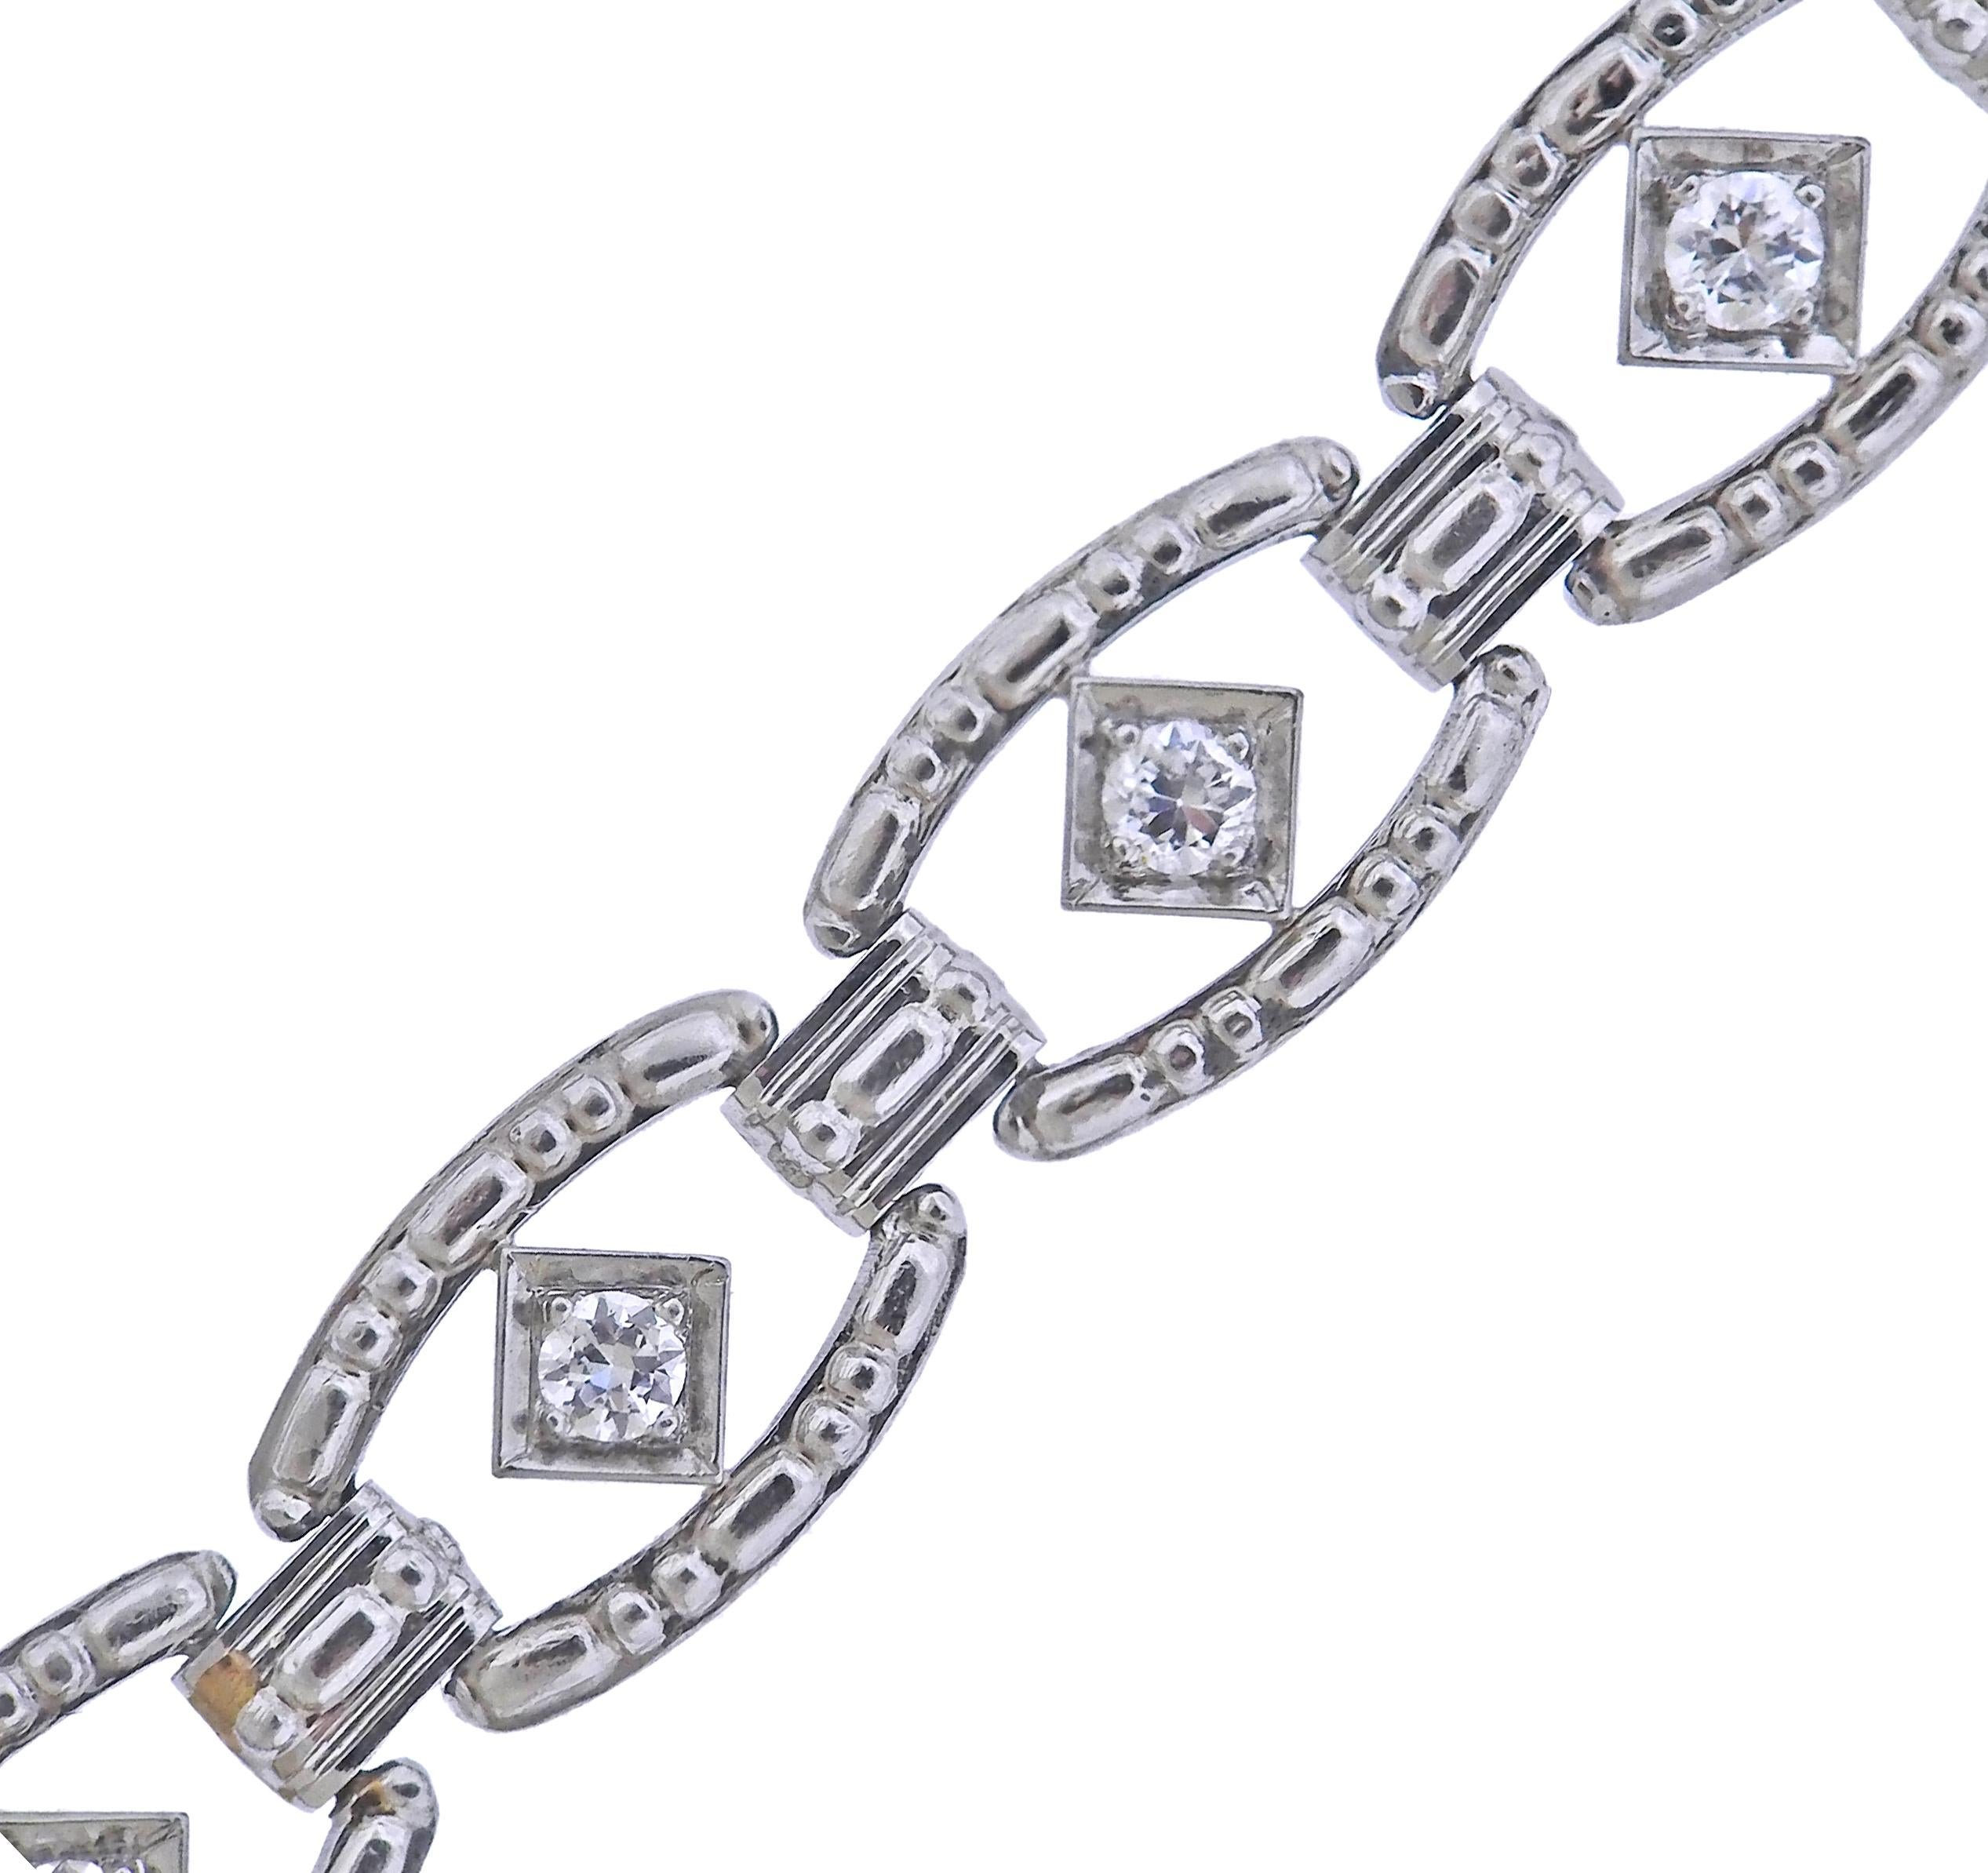 Art-Deco-Armband aus Platin von Tiffany & Co, mit ca. 0,35 ct Diamanten. Das Armband ist 6,75